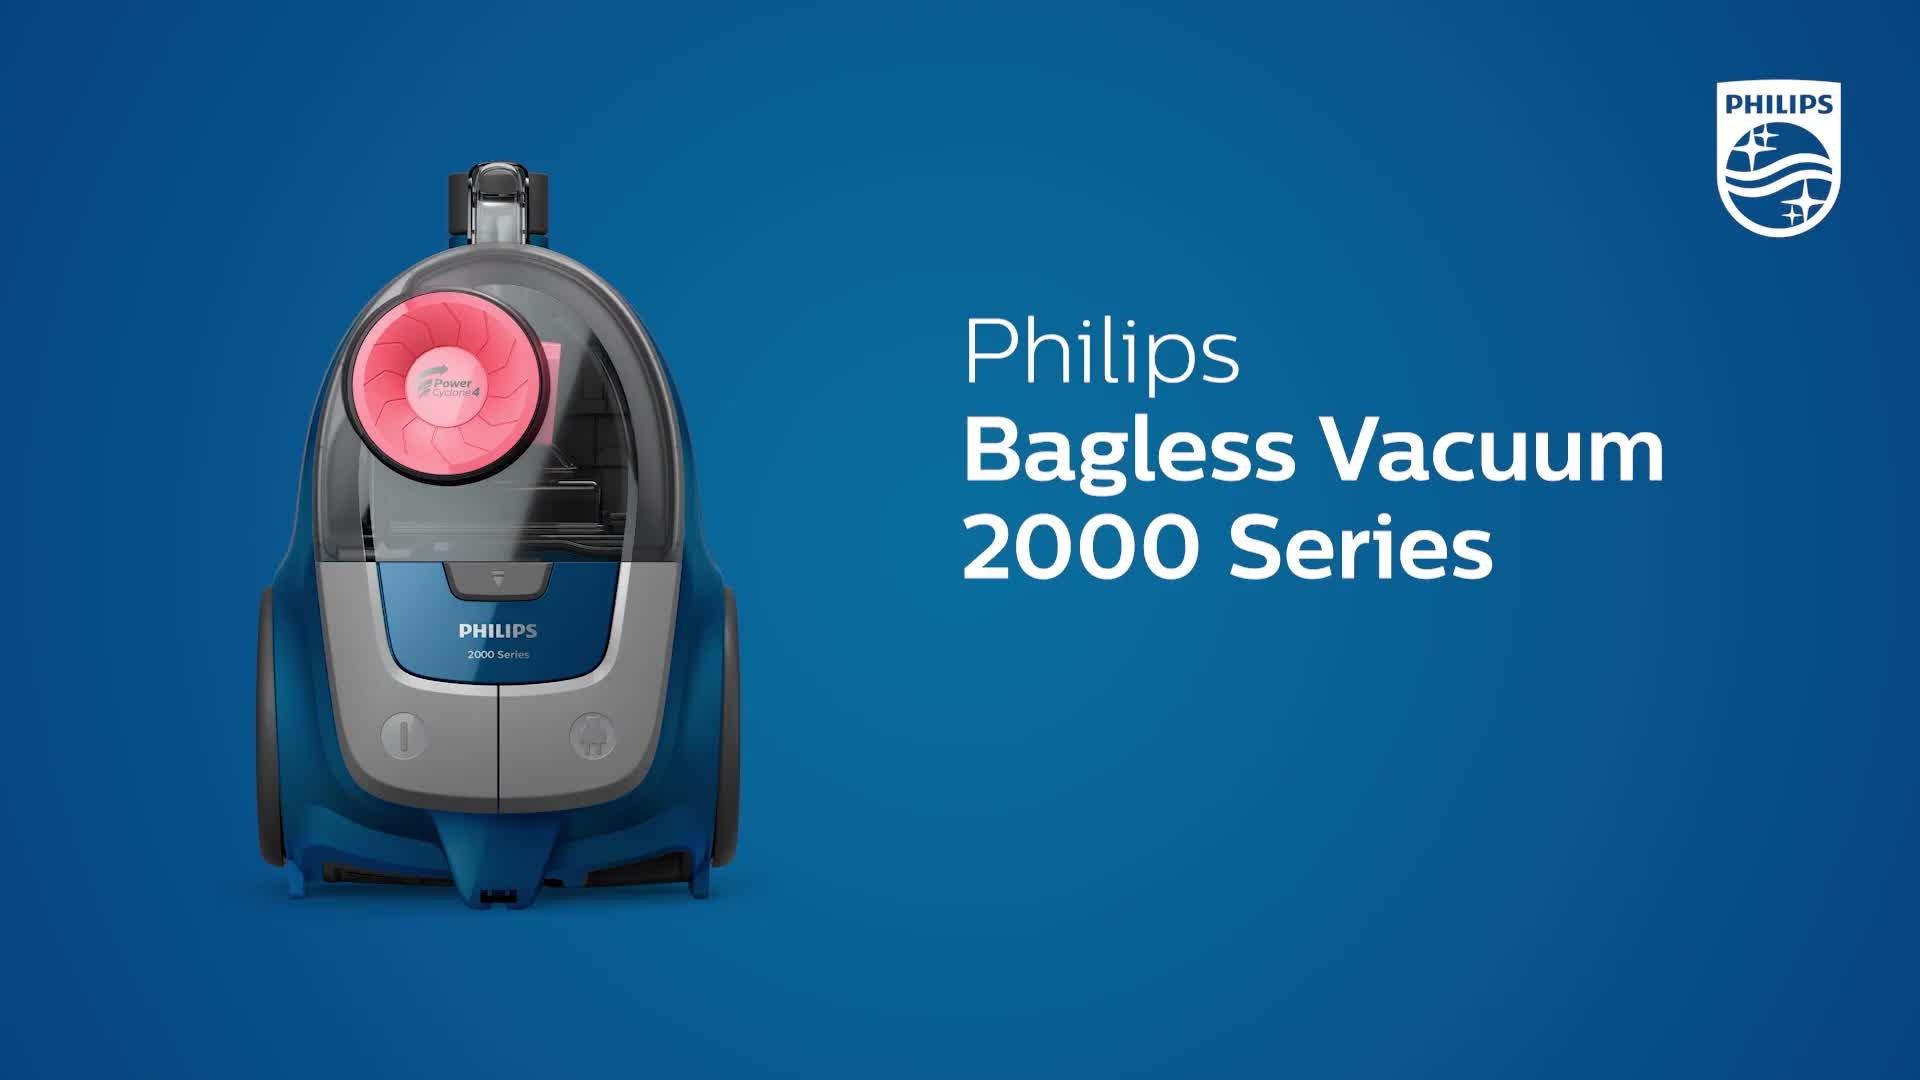 2000 series xb2042 01. Пылесос Philips 2000 Series XB 2042. Пылесос Philips 2000 Series xb2042/01. Philips пылесос 2022. Пылесос Philips 2000 Series xb2023/01.